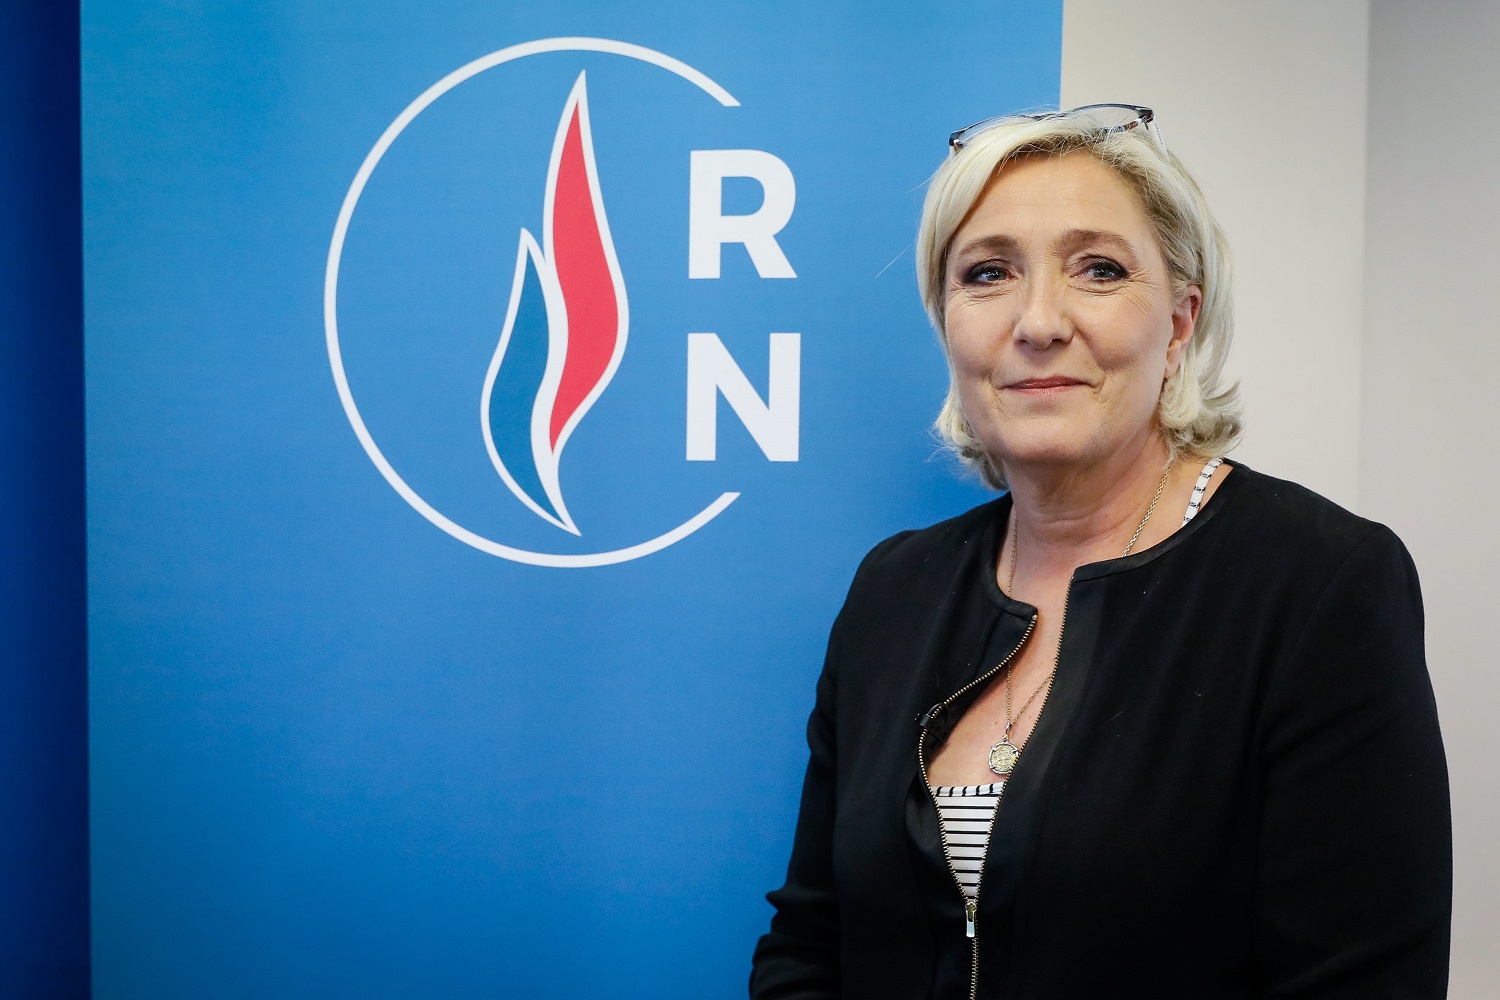 Verkiezingen Frankrijk: Marine Le Pen tegen Emmanuel Macron voor presidentschap in tweede ronde